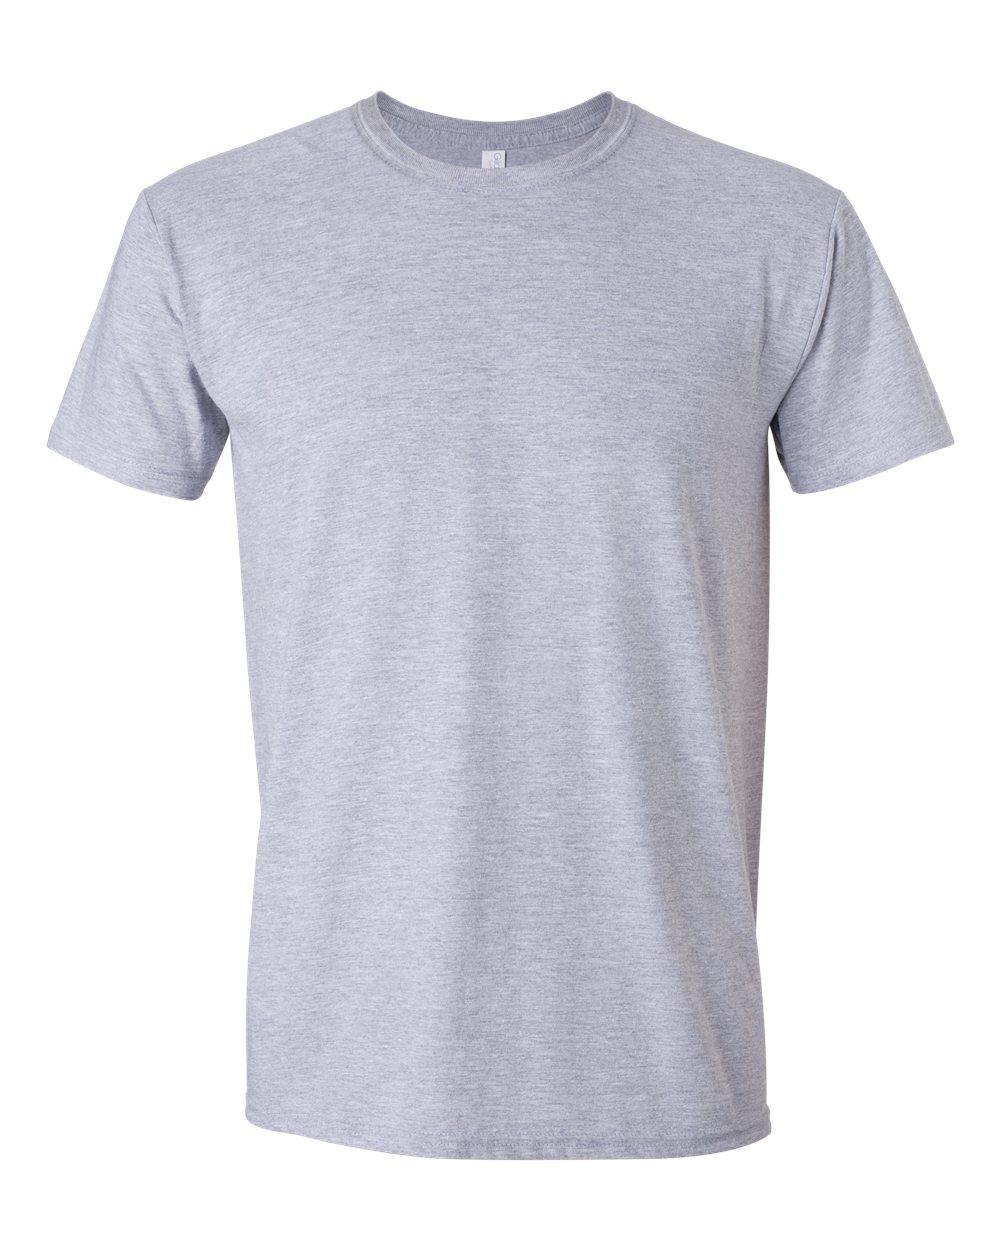 "Build A Tee" Basic Colors - Gildan Short Sleeve Blank T-Shirt